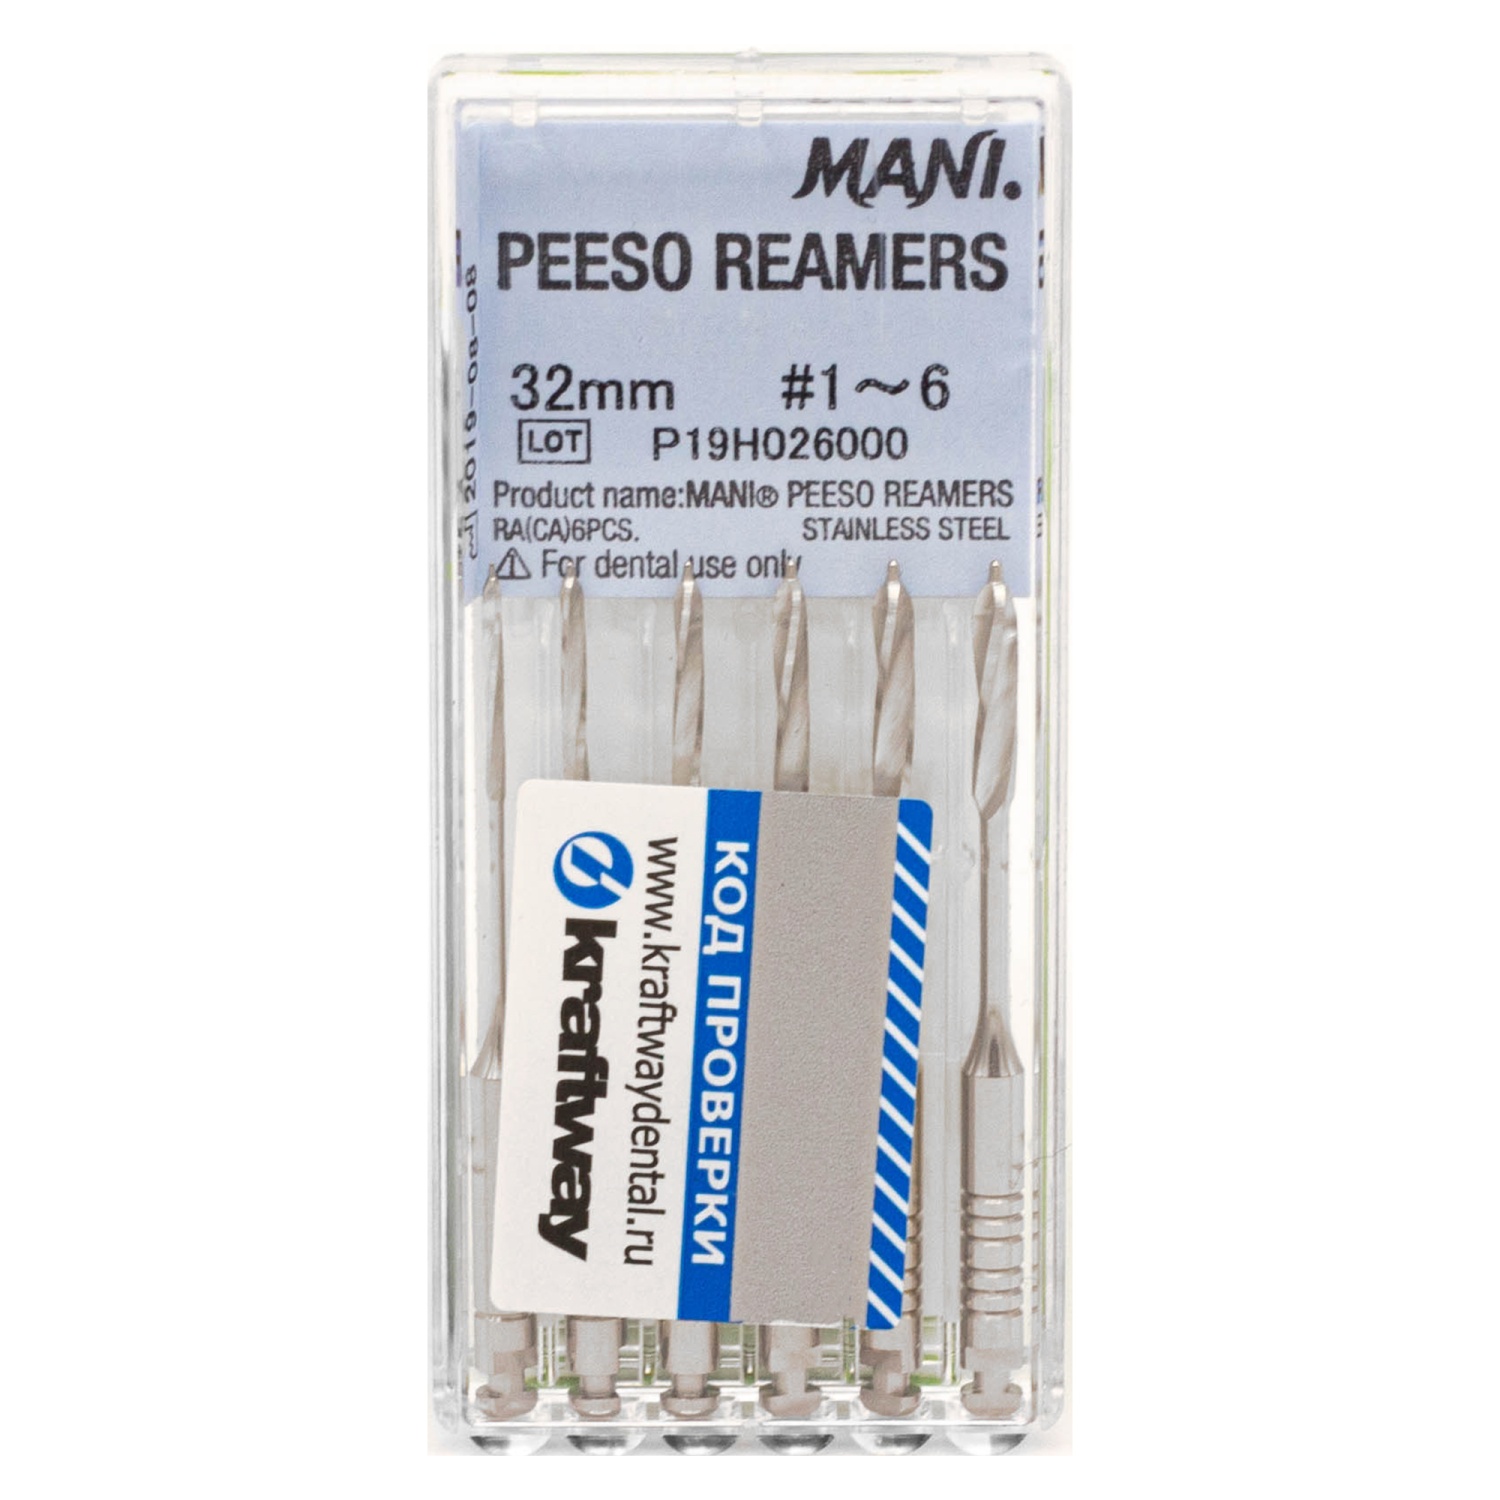 Римеры пьезо/Peeso reamers 32 мм №1-6 (6 шт), "Mani" (аналог Ларго)